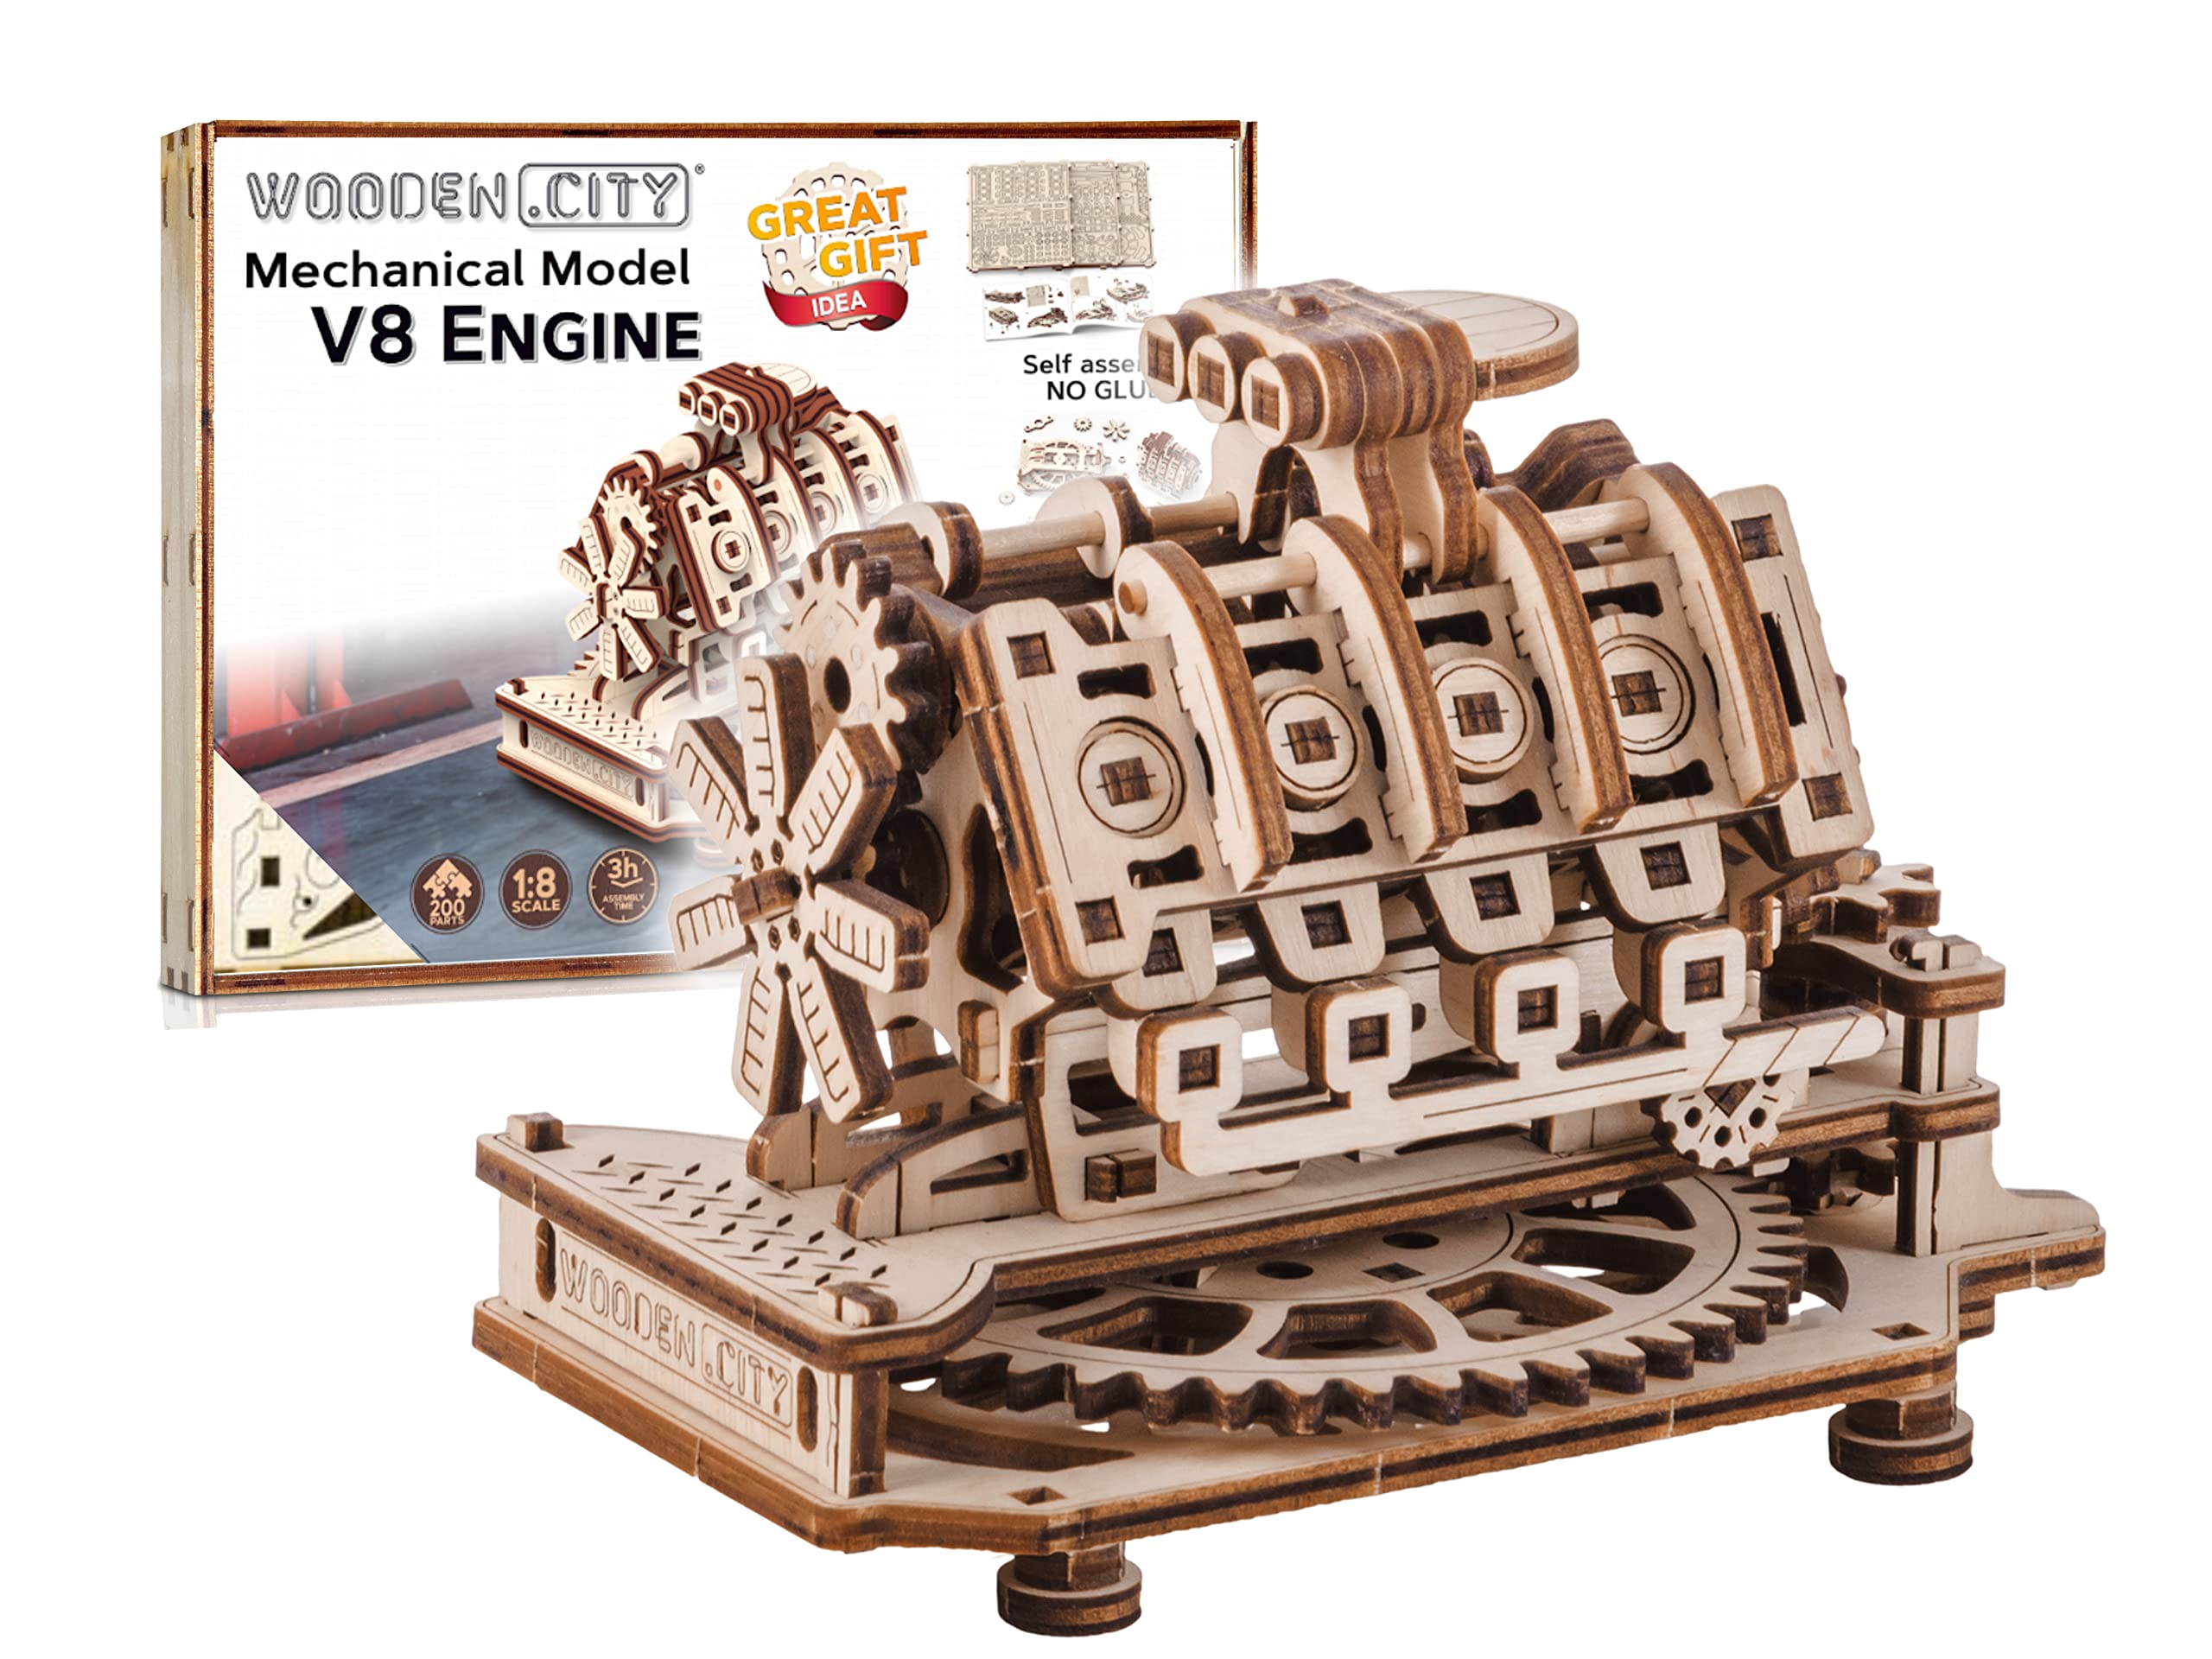 WOODEN.CITY 3D Puzzle Holzmodellbausatz zum Bauen - V8 Engine, Mechanisch Spielzeug für Erwachsene, Laser Cut DIY - Holzpuzzle Erwachsene, Miniatur Motor Bausatz, Modellbausatz